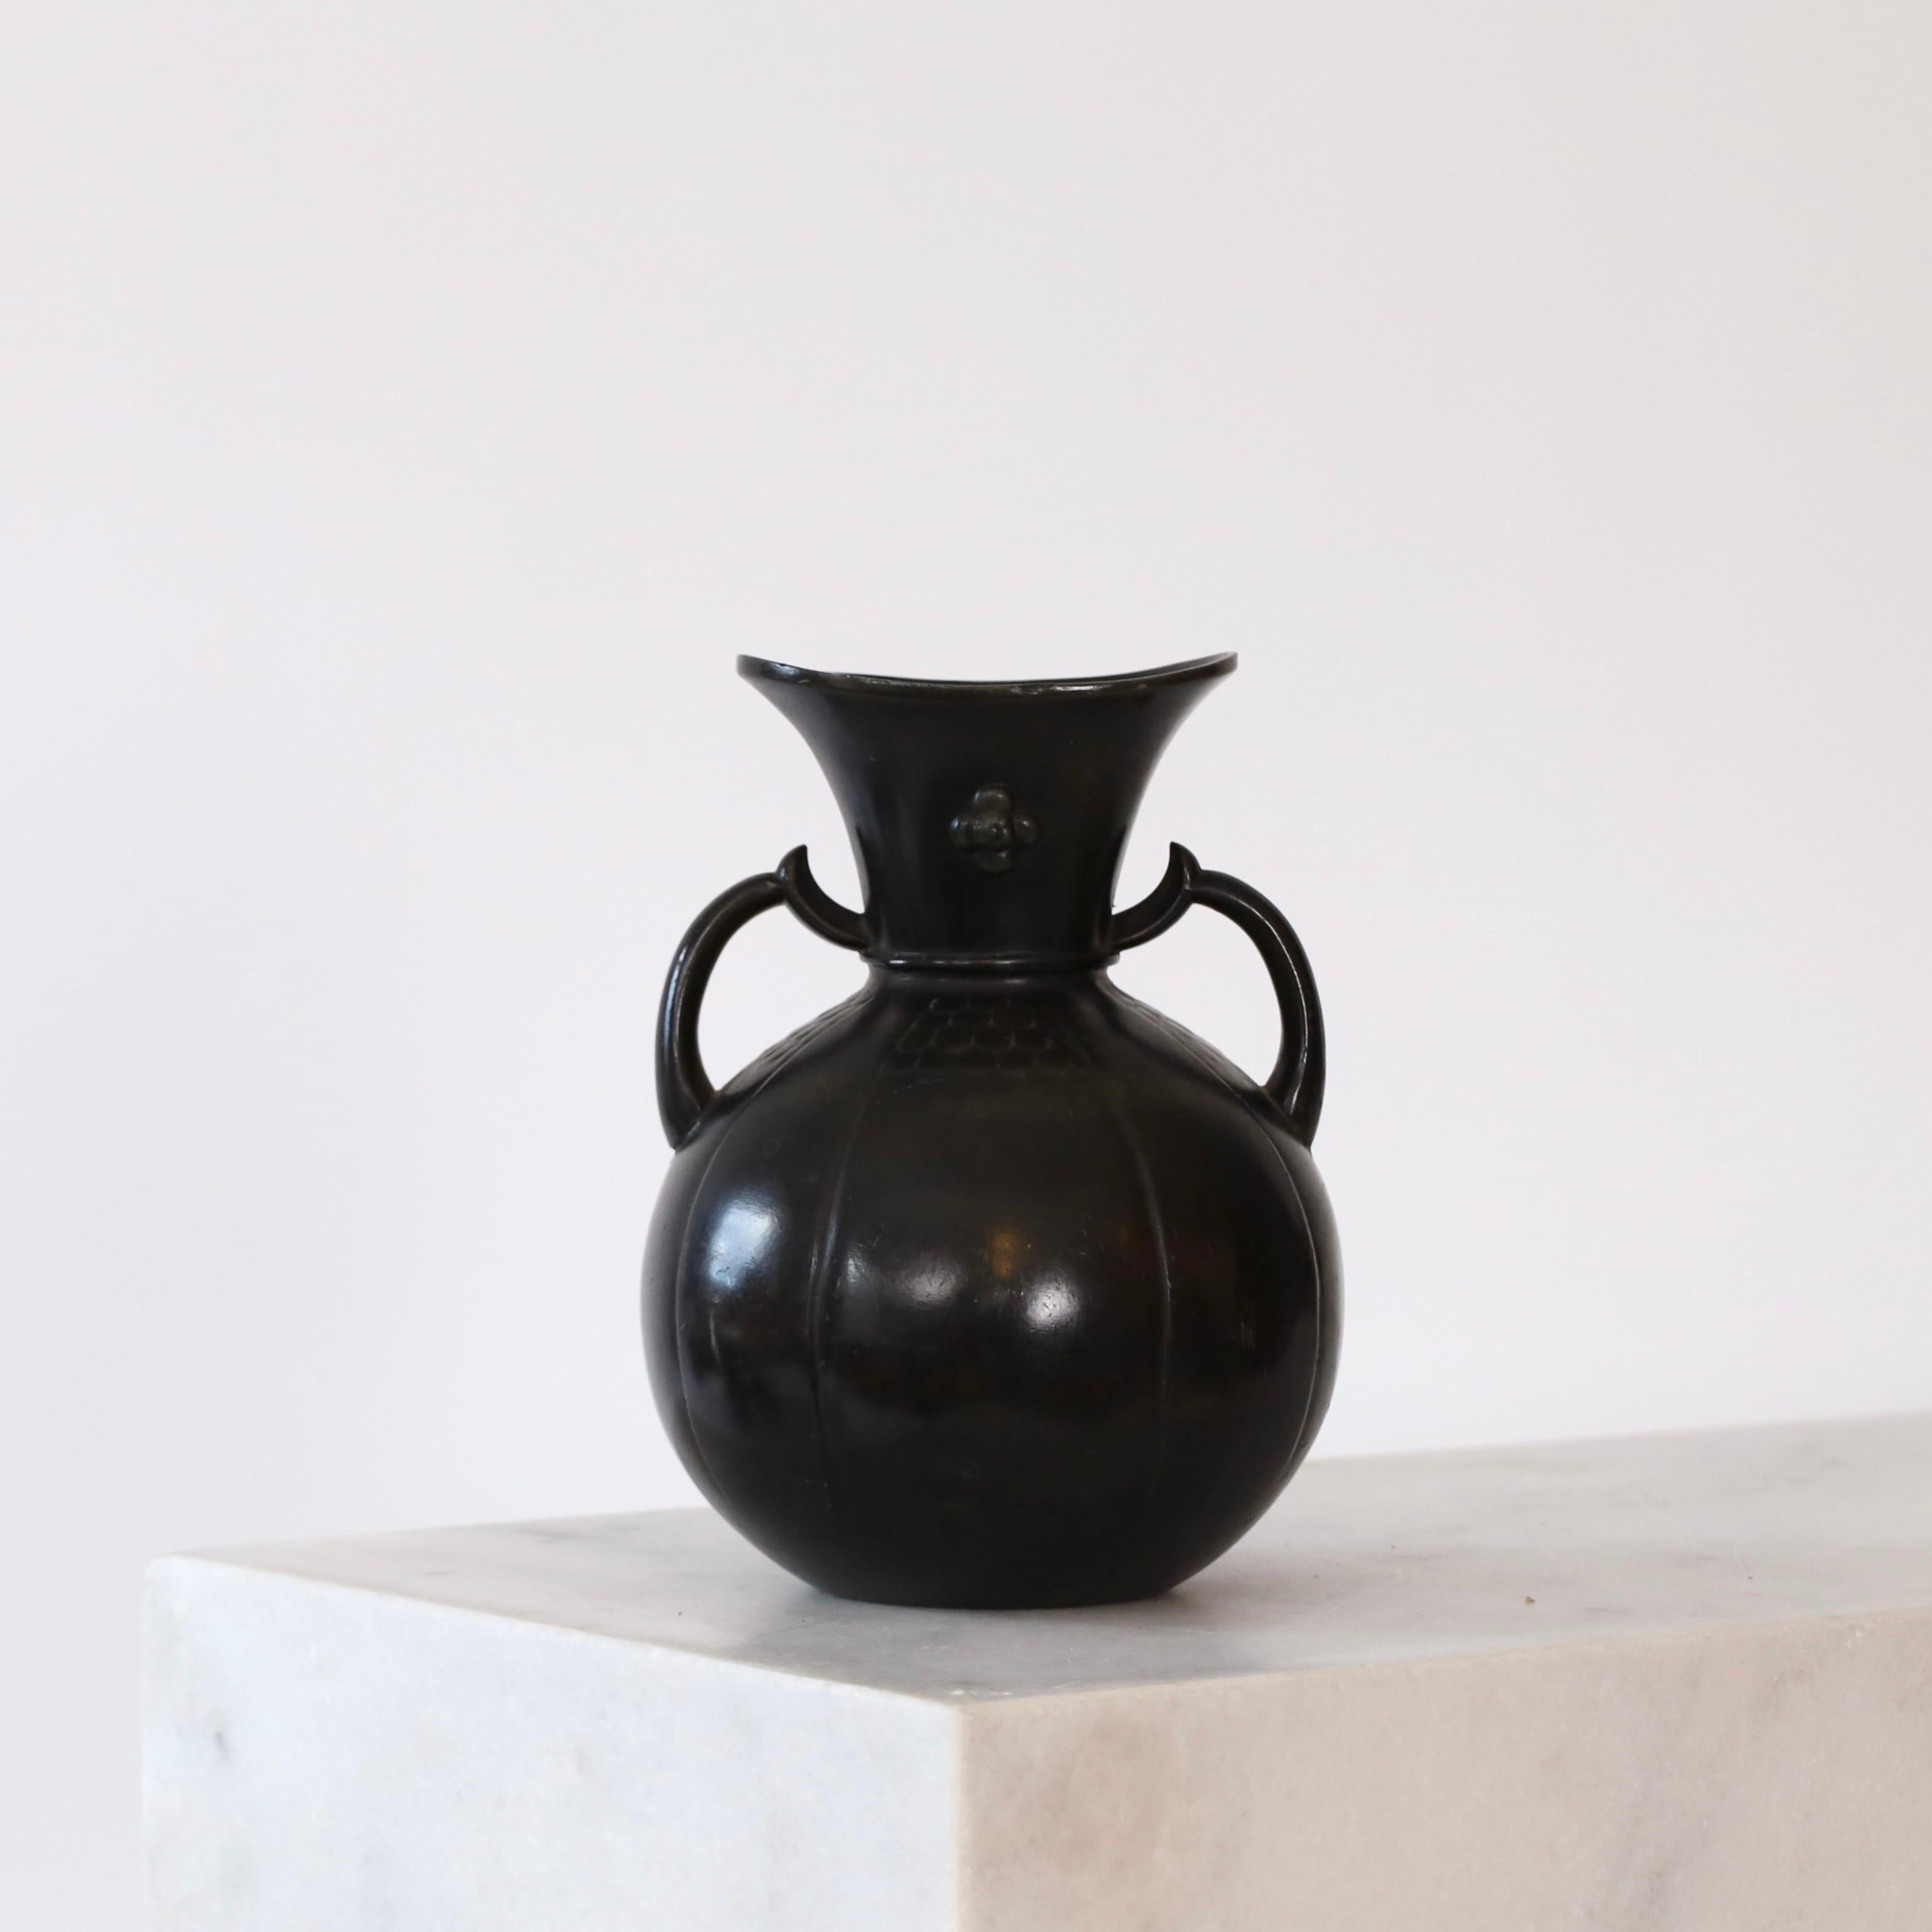 Un vase en métal avec des tasses conçu par Just Andersen dans les années 1920. Une belle pièce pour un endroit magnifique.

* Un vase rond en métal avec des tasses et des décorations florales
* Designer : Just Andersen
* Modèle : D136
* Année :